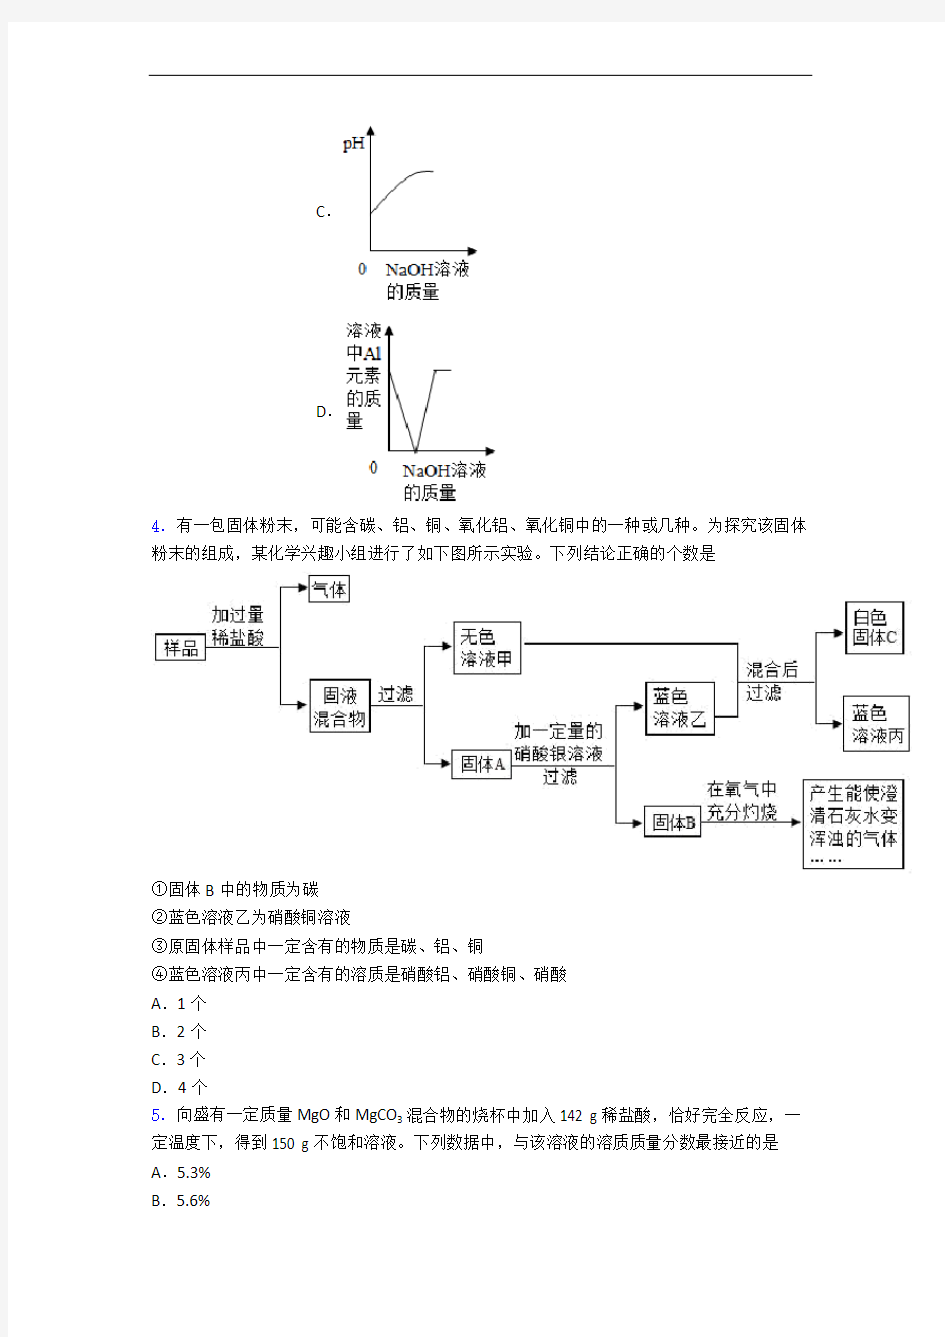 江苏省启东中学九年级化学普通高中提前招生试题